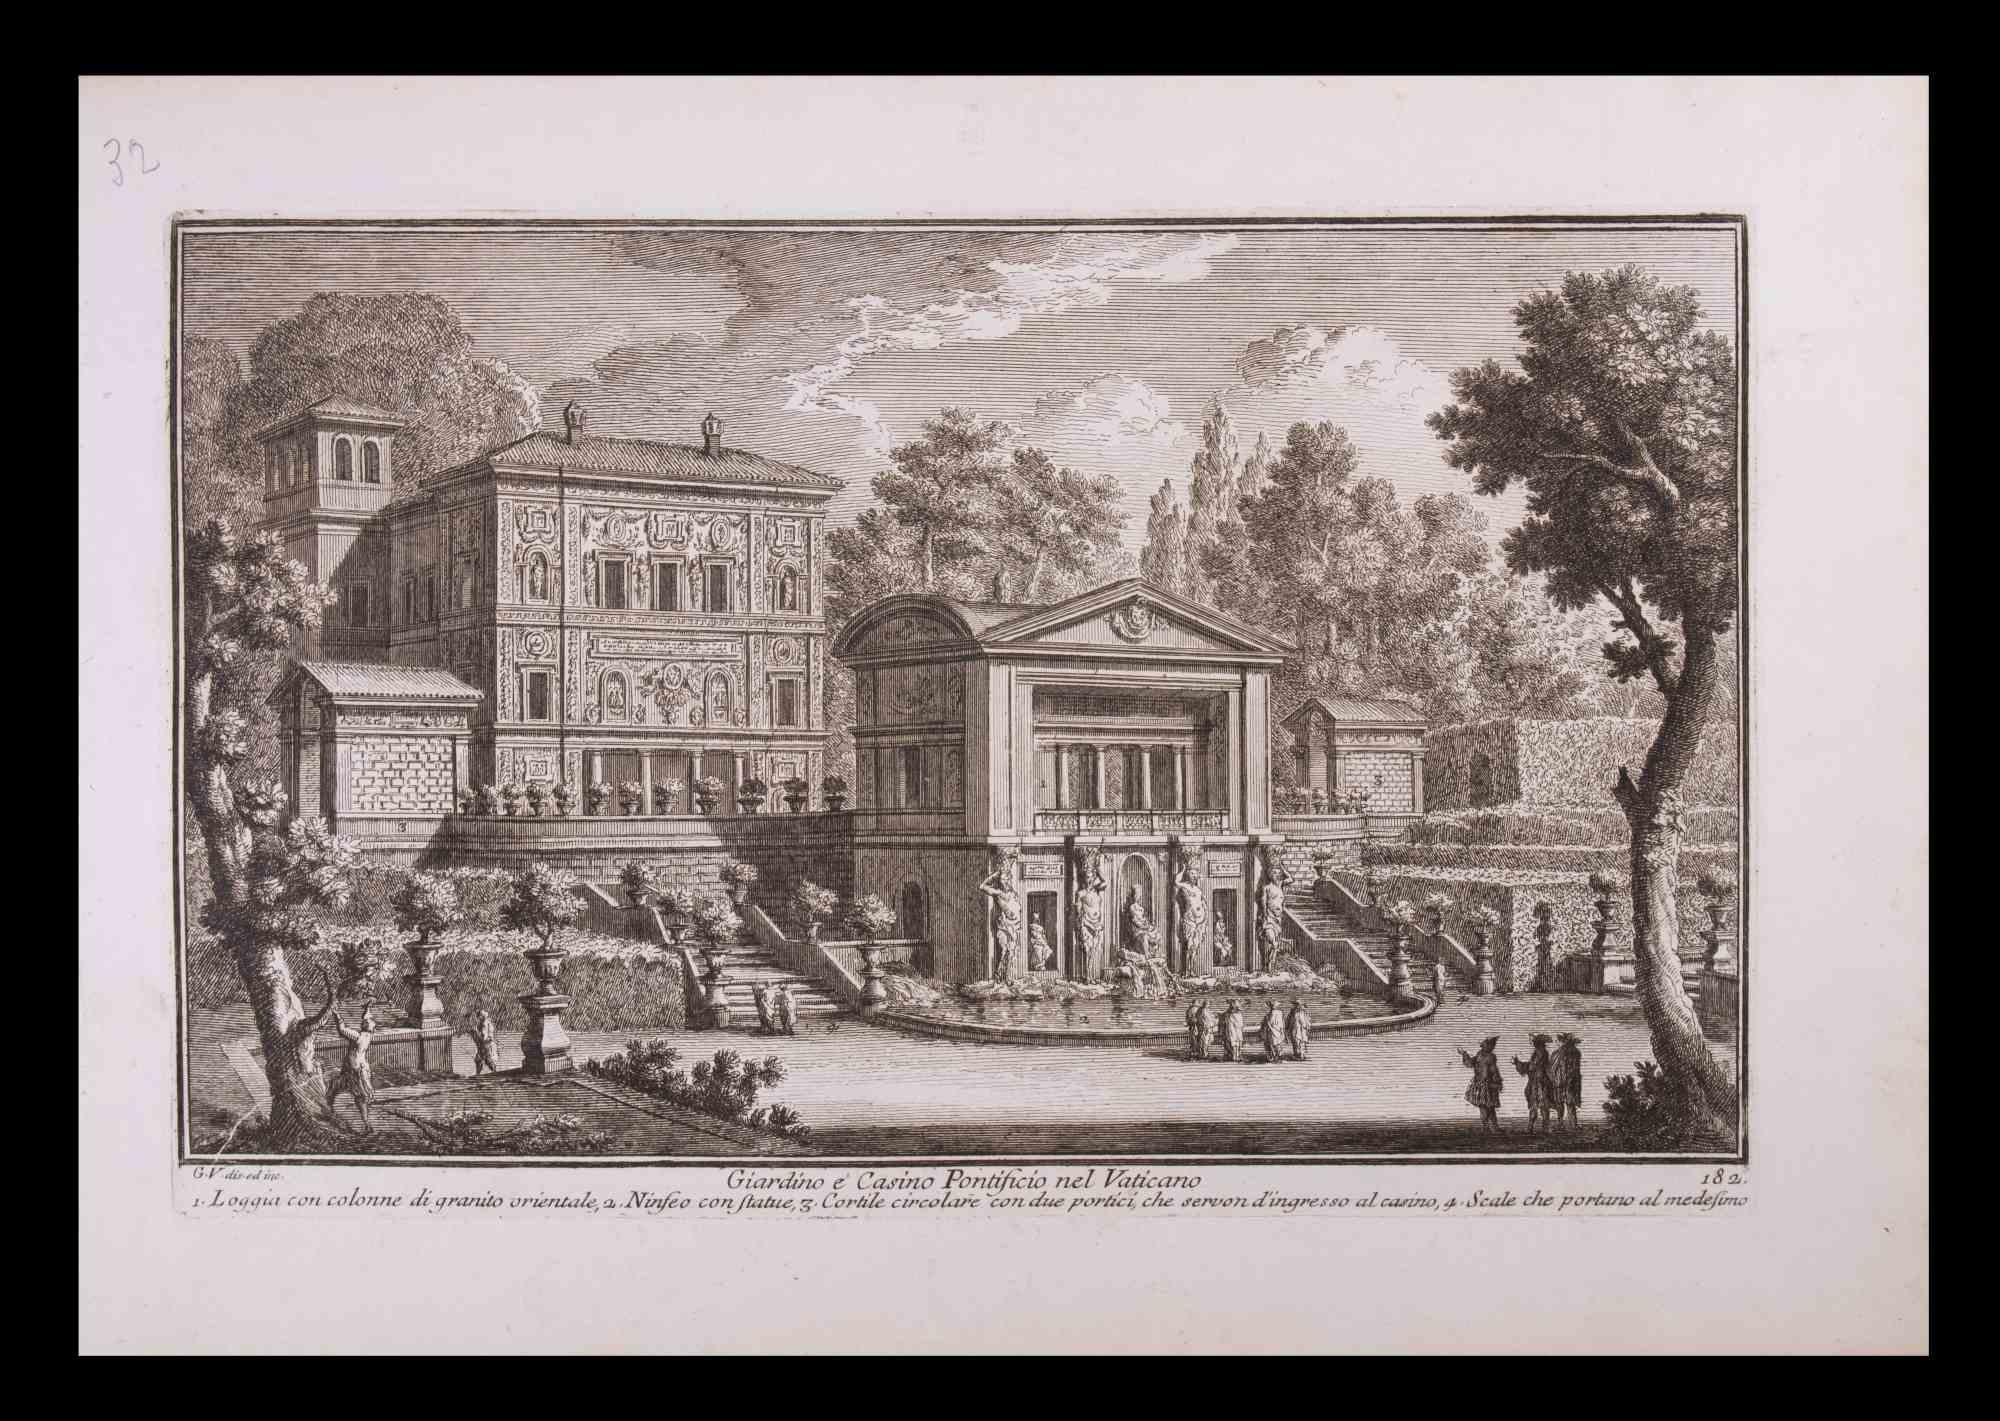 Giardino e Casino Pontificio ist eine originale Schwarz-Weiß-Radierung aus dem späten 18. Jahrhundert, die von  Giuseppe Vasi.

Die schöne Radierung zeigt einen Blick auf Rom.

Signiert und betitelt am unteren Rand der Platte. Auf der unteren Seite